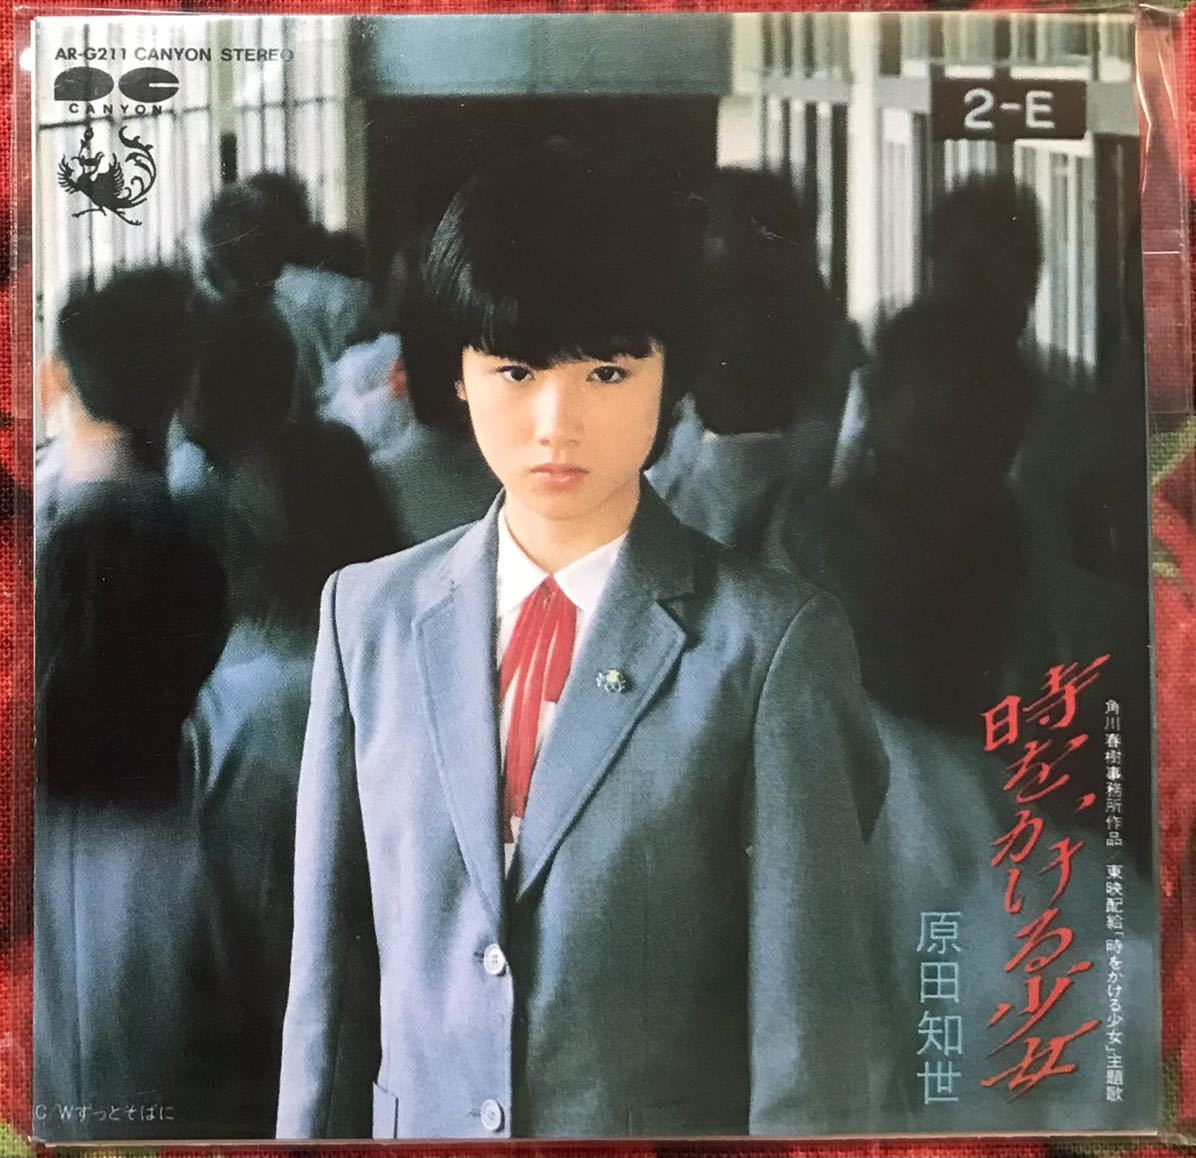  время slip Glyco CD Harada Tomoyo [ час .... девушка ] юность. мелодия - шоколад 8cmCD